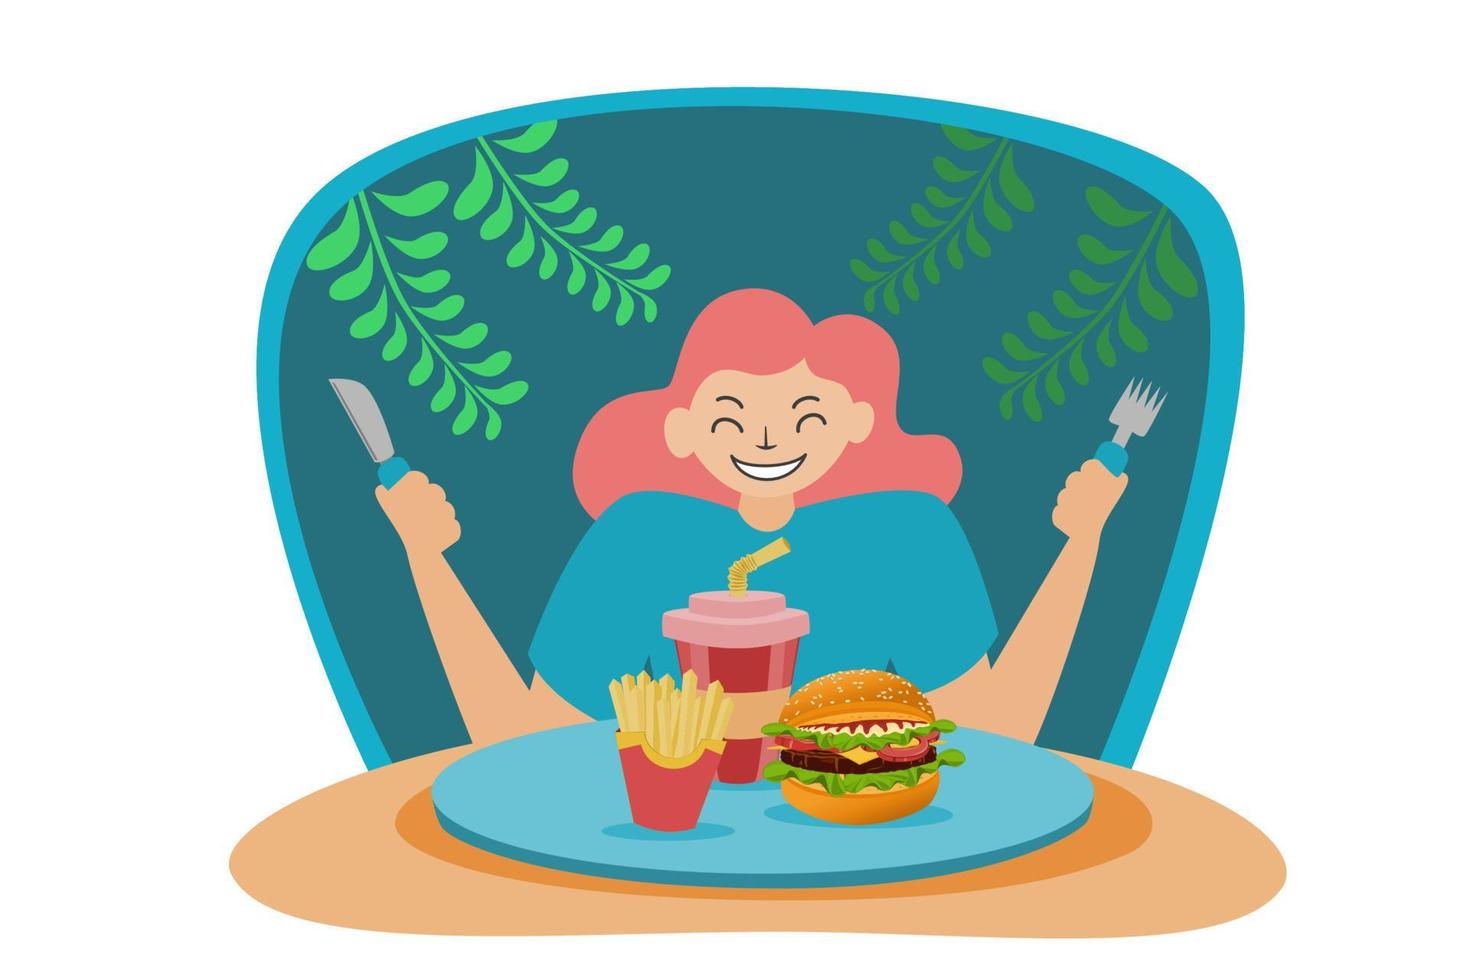 illustrazione di una persona che si prepara a mangiare cibo spazzatura come hamburger e patatine fritte e acqua vettore